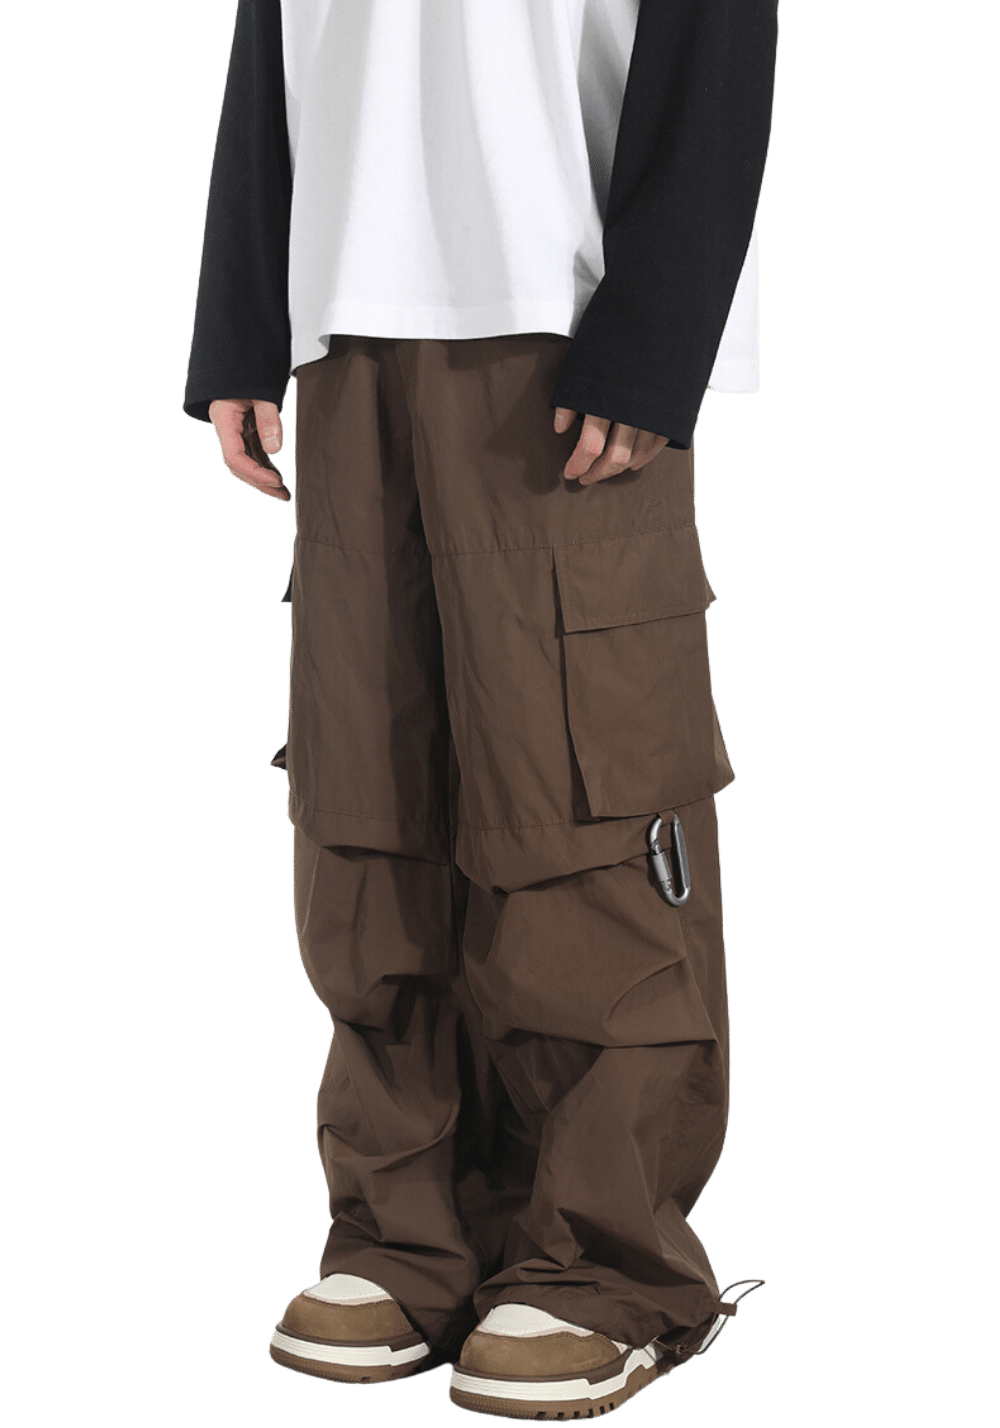 American Street Style Cargo Pants - PSYLOS 1, American Street Style Cargo Pants, Pants, HARSH AND CRUEL, PSYLOS 1